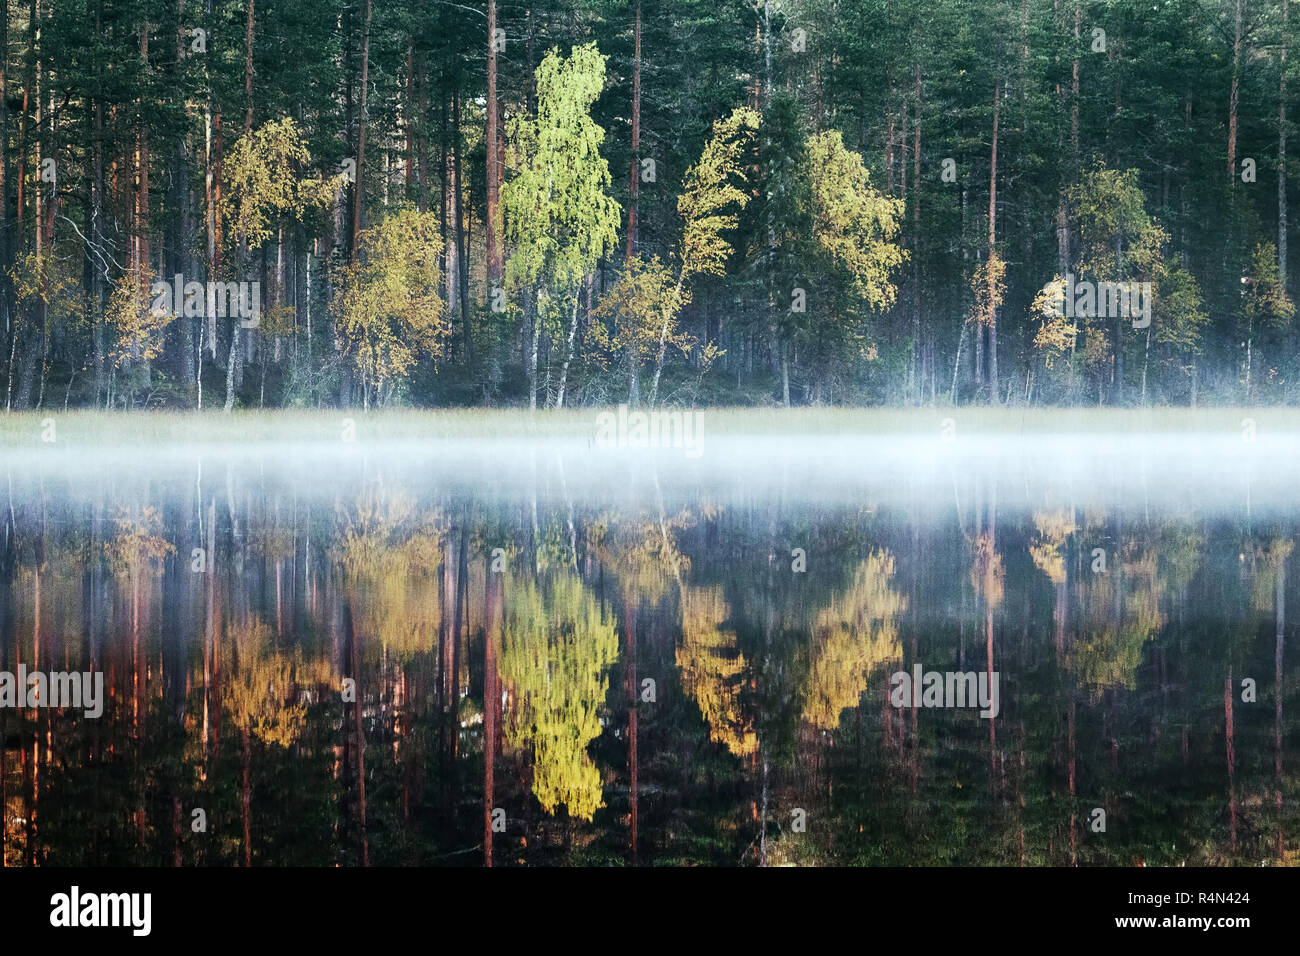 Ricca gamma di colori del bosco in autunno sulla riva di un lago tranquillo nella nebbia, albero riflessioni in acqua. La nostalgia dei giorni d'autunno in nord Foto Stock